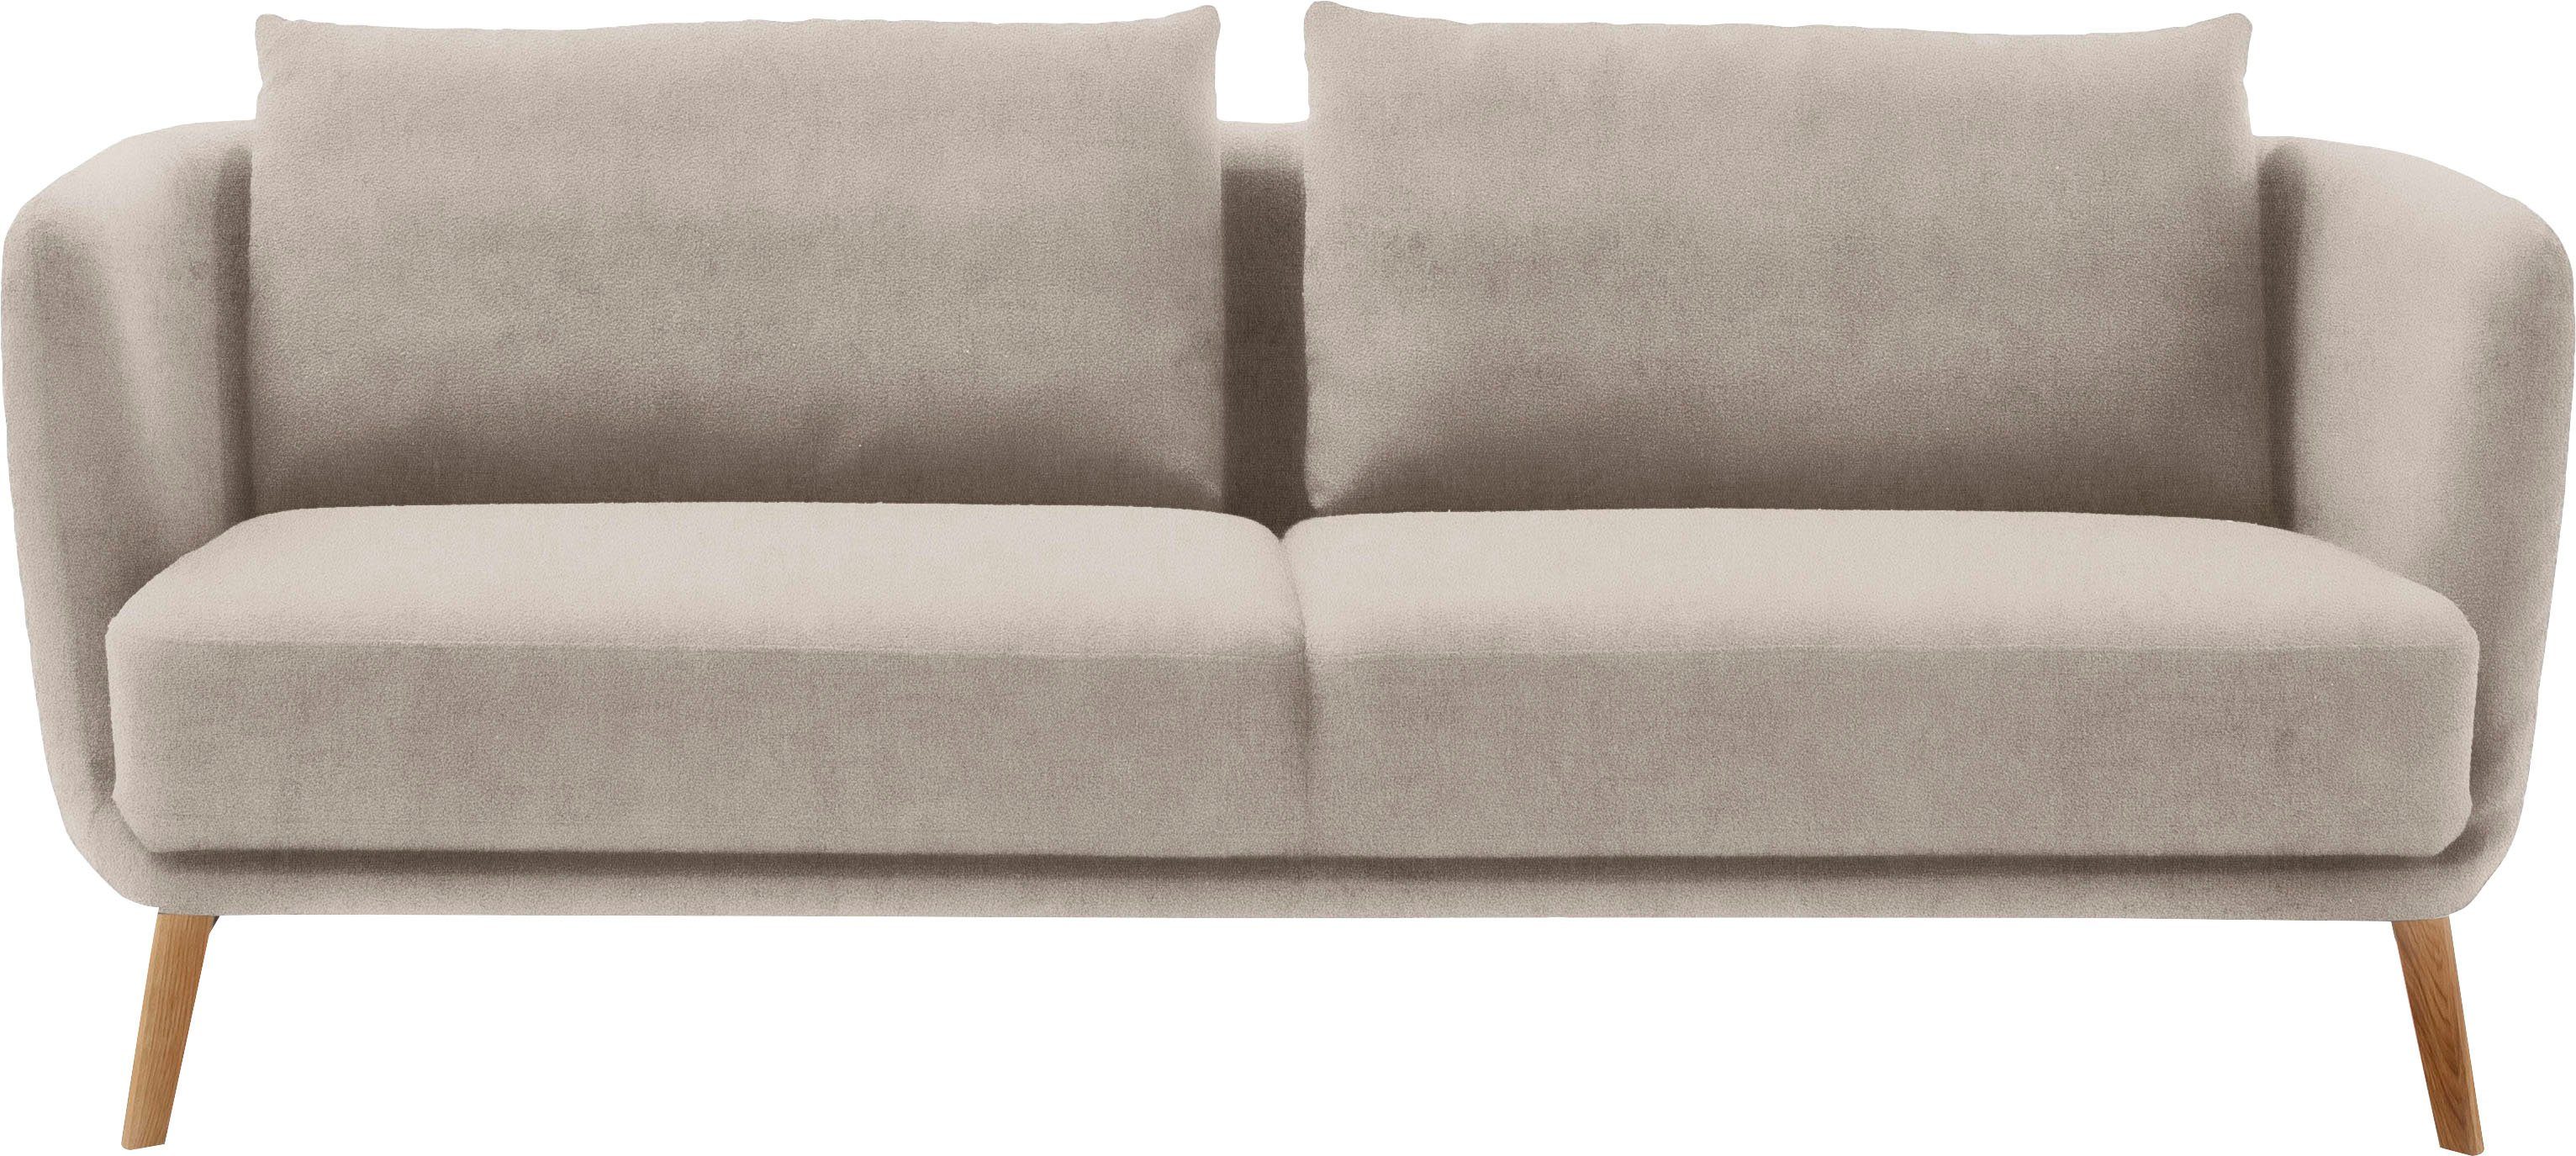 SCHÖNER WOHNEN-Kollektion 3-Sitzer Pearl - 5 Jahre Hersteller-Garantie, auch in Bouclé, Maße (B/H/T): 210/71/91 cm, Füße Massivholz